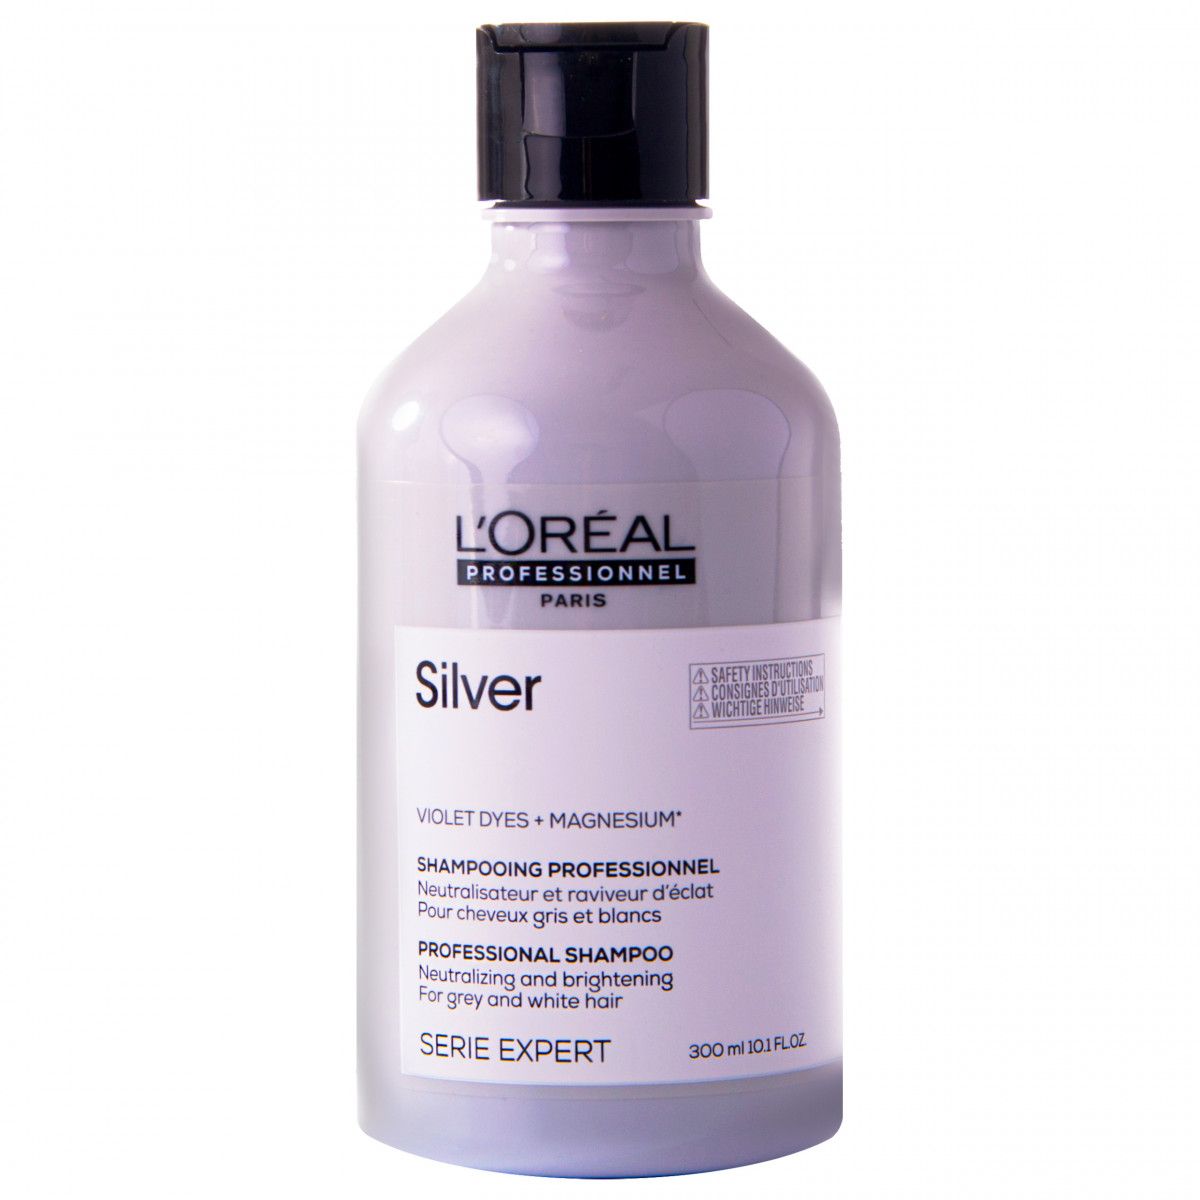 Loreal Silver szampon do włosów siwych i rozjaśnianych 300 ml